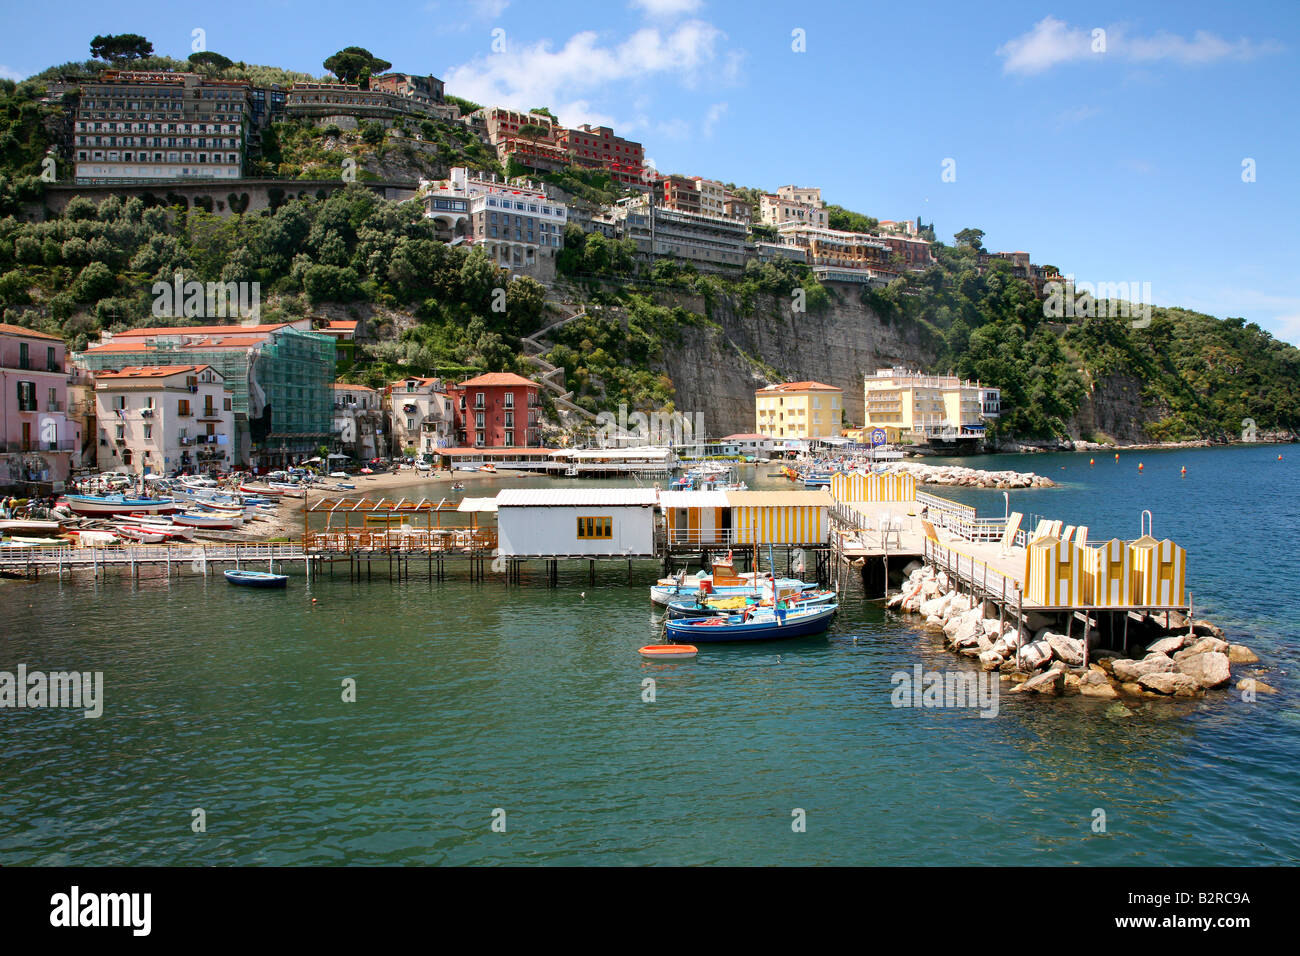 The beautiful Marina della Lobra, oSorrento, Italy Stock Photo - Alamy